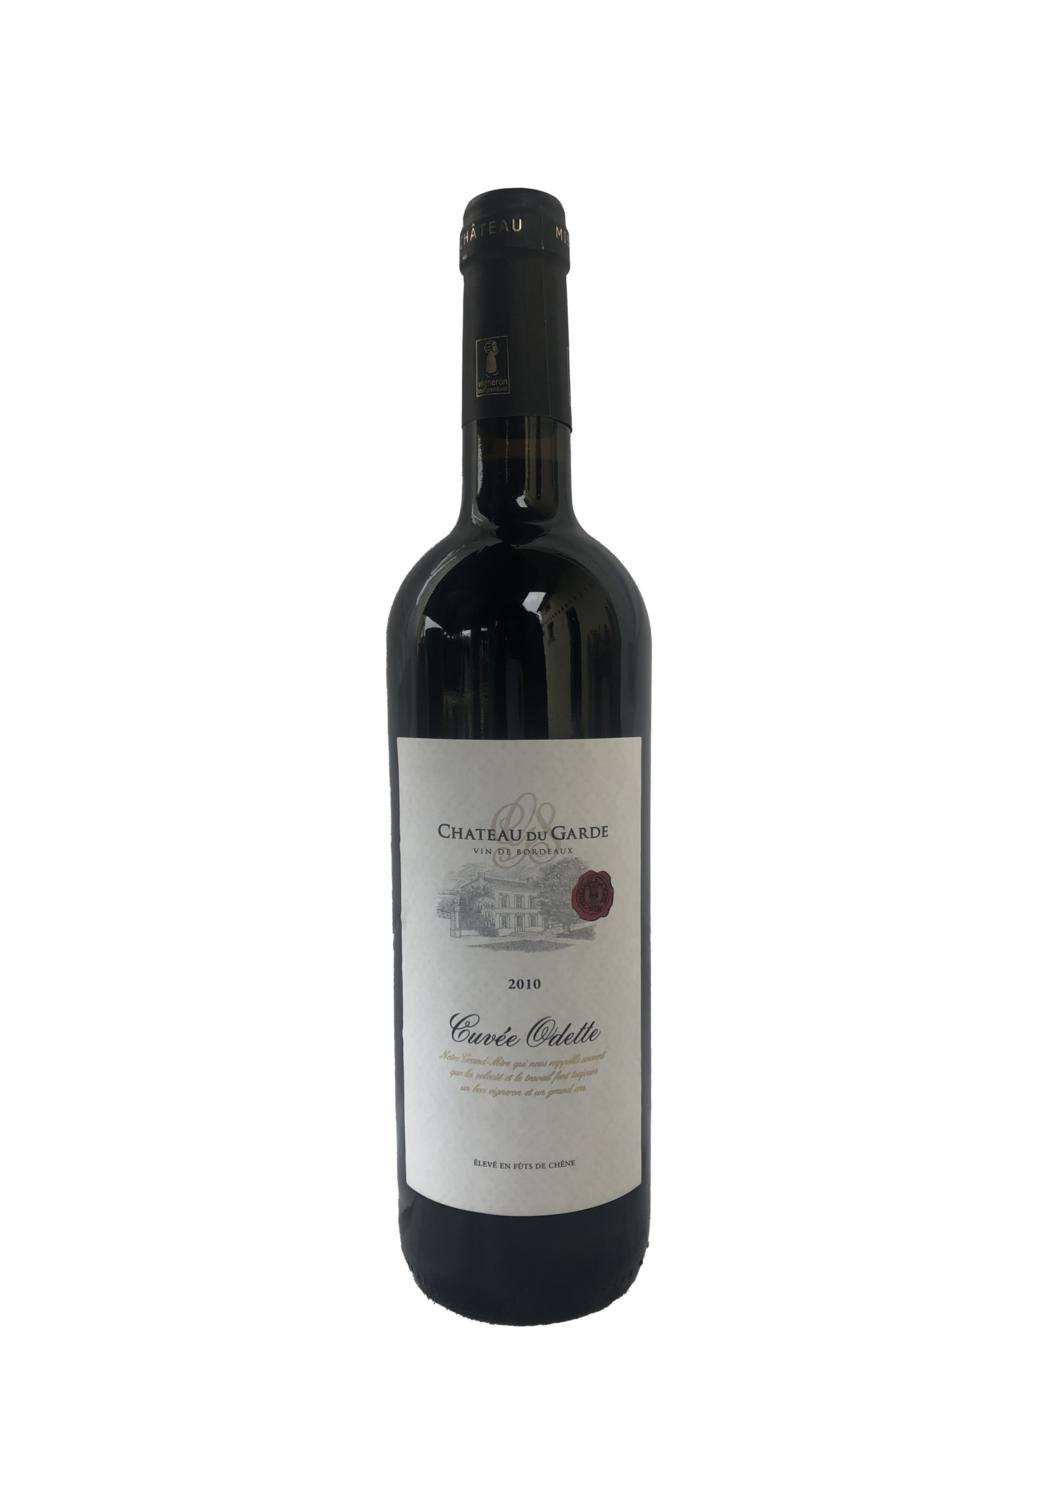 Château du Garde 2010 - Cuvée Odette Prestige - Vin rouge Côtes de Bordeaux